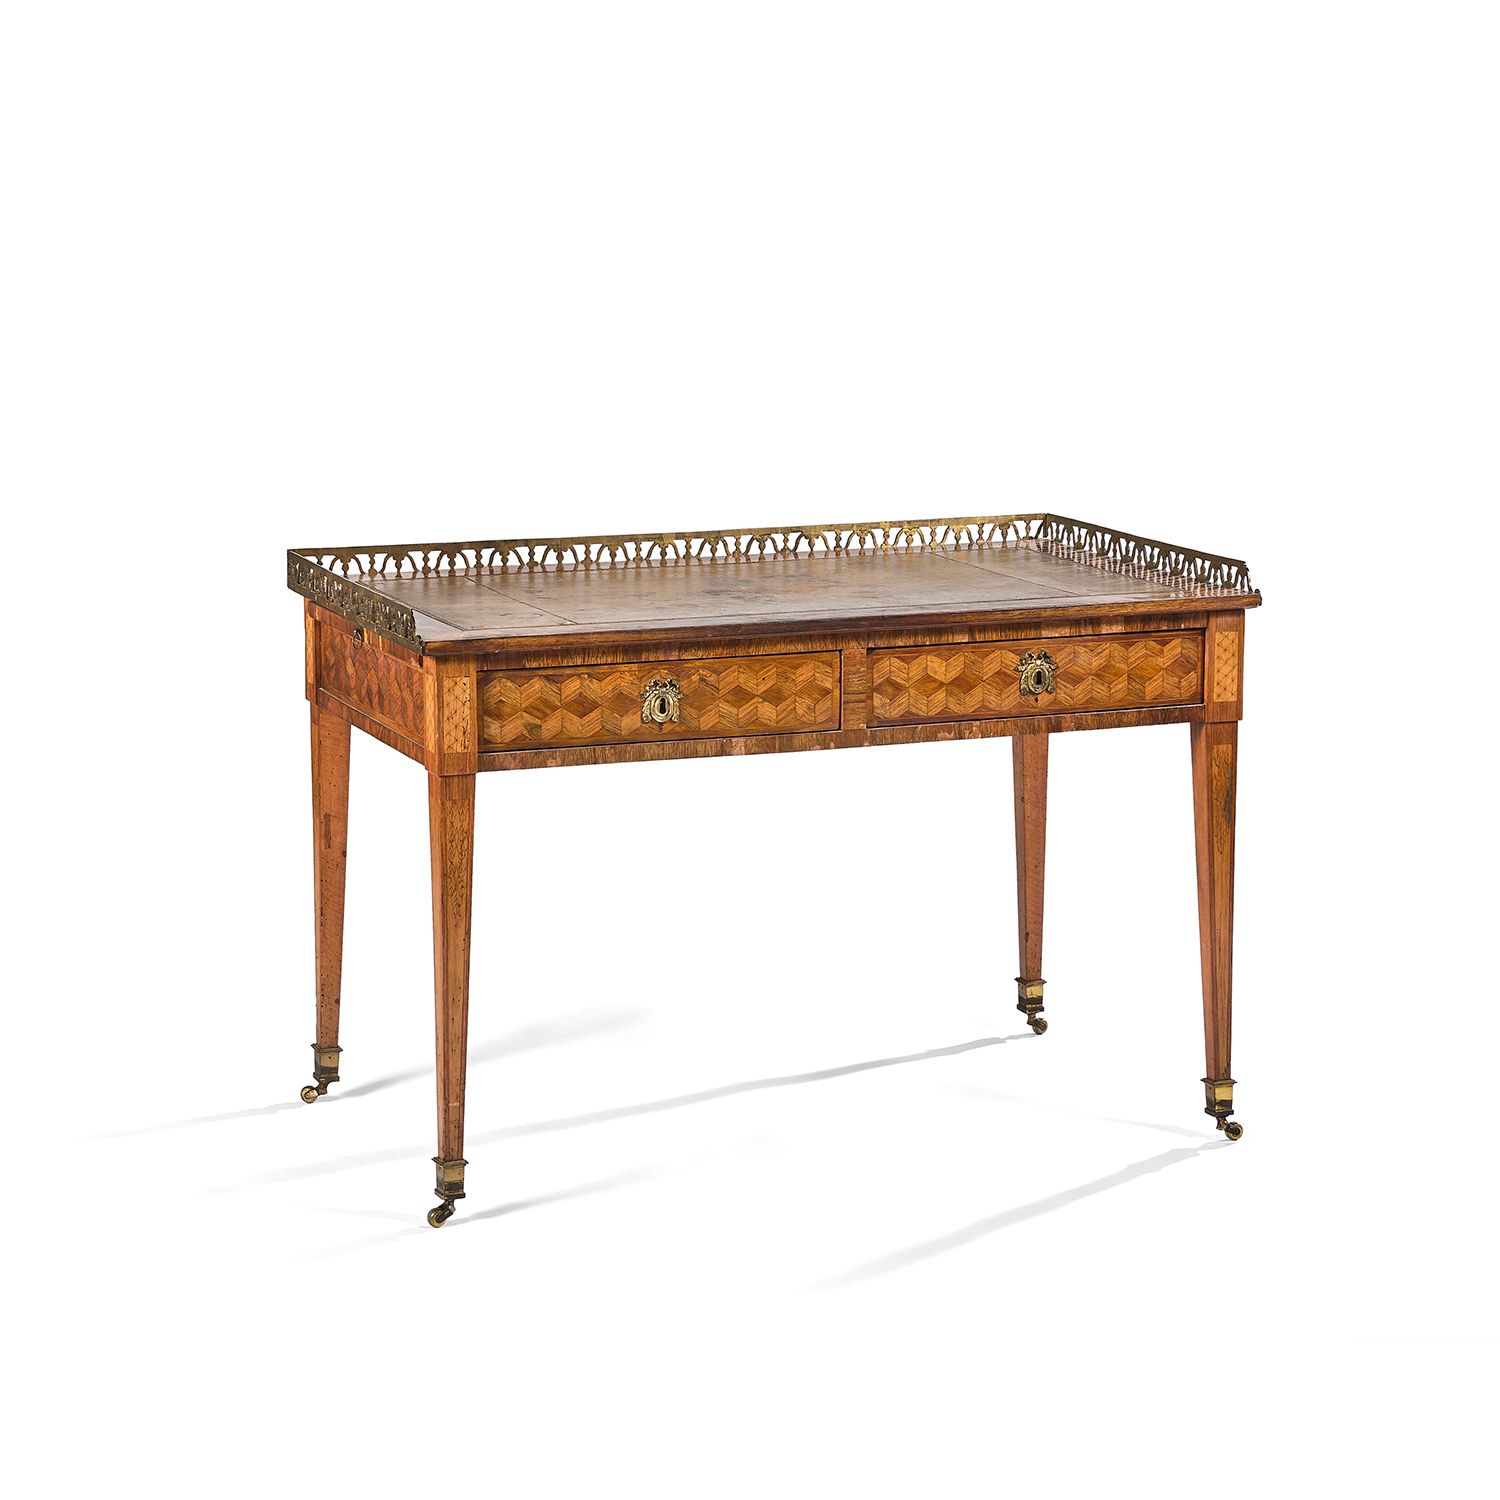 Null 路易十六时期的平面书桌 
这张书桌是由缎面木、玫瑰木和黄木单板制成的，上面有一个绿色色调的立方体镶嵌。它的一侧有两个模拟的抽屉，另一侧有两个抽屉。它的&hellip;